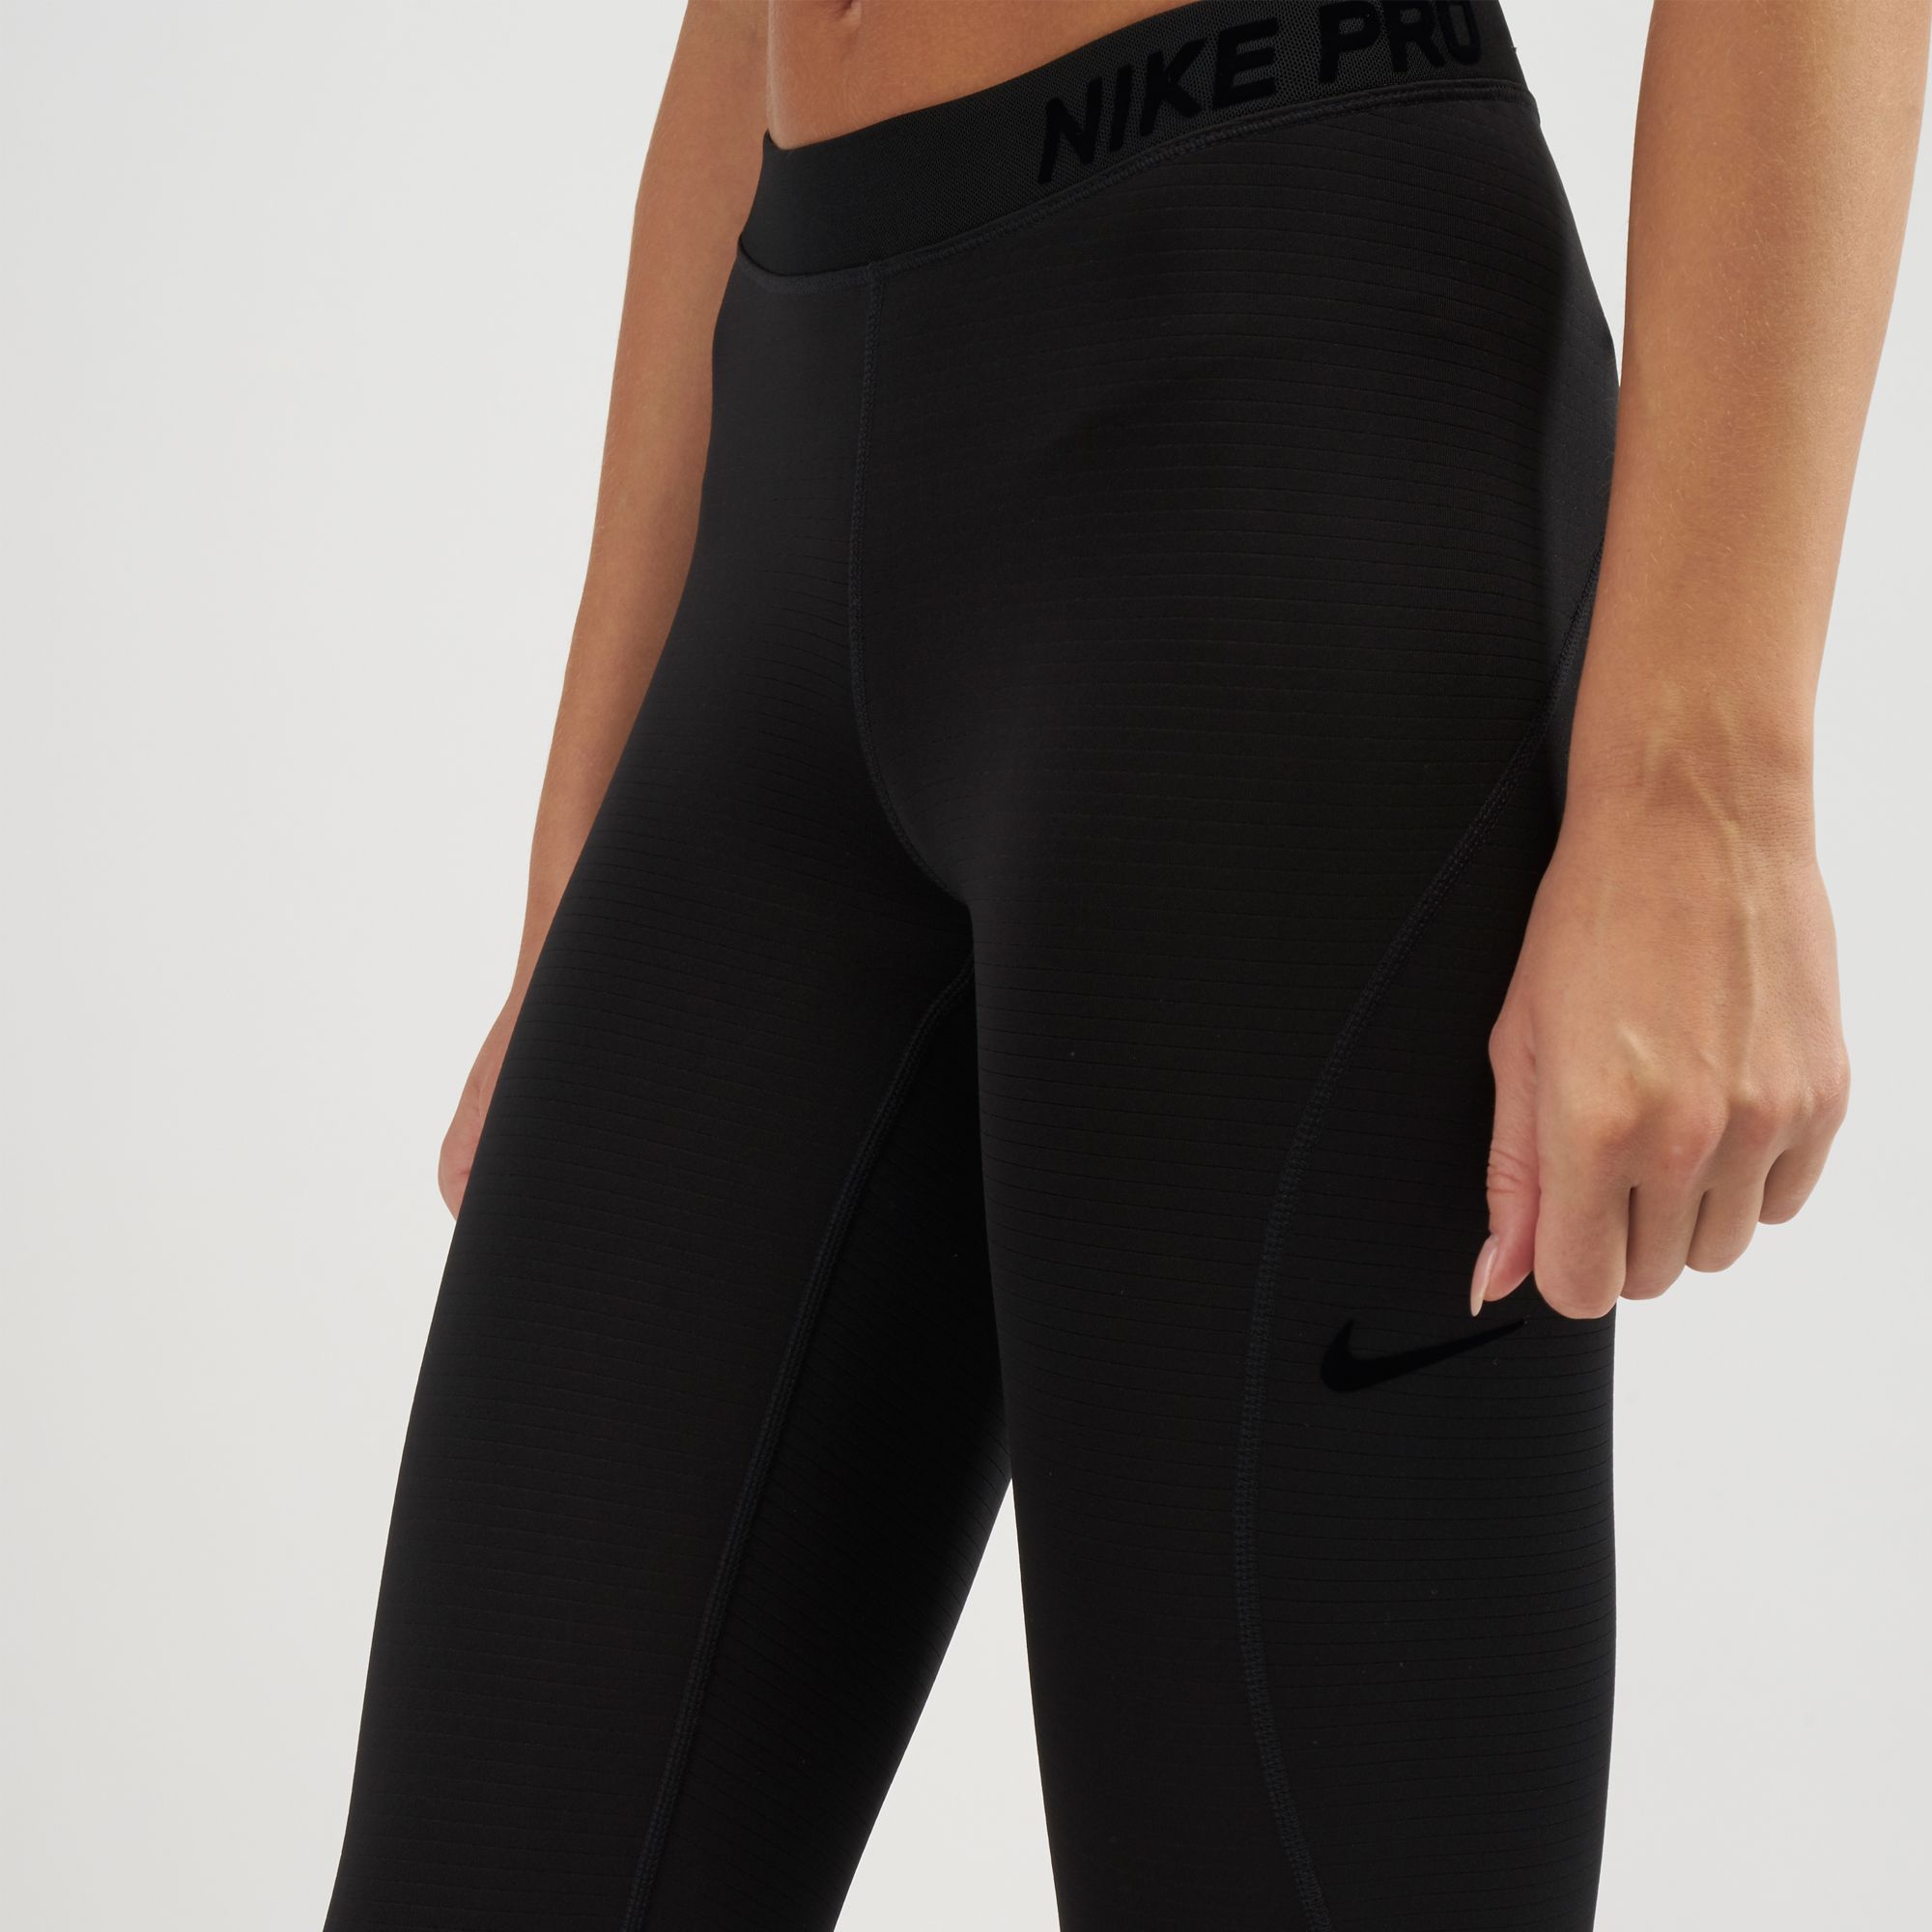 Buy Nike Pro Woven Pants Online in Dubai, UAE | SSS